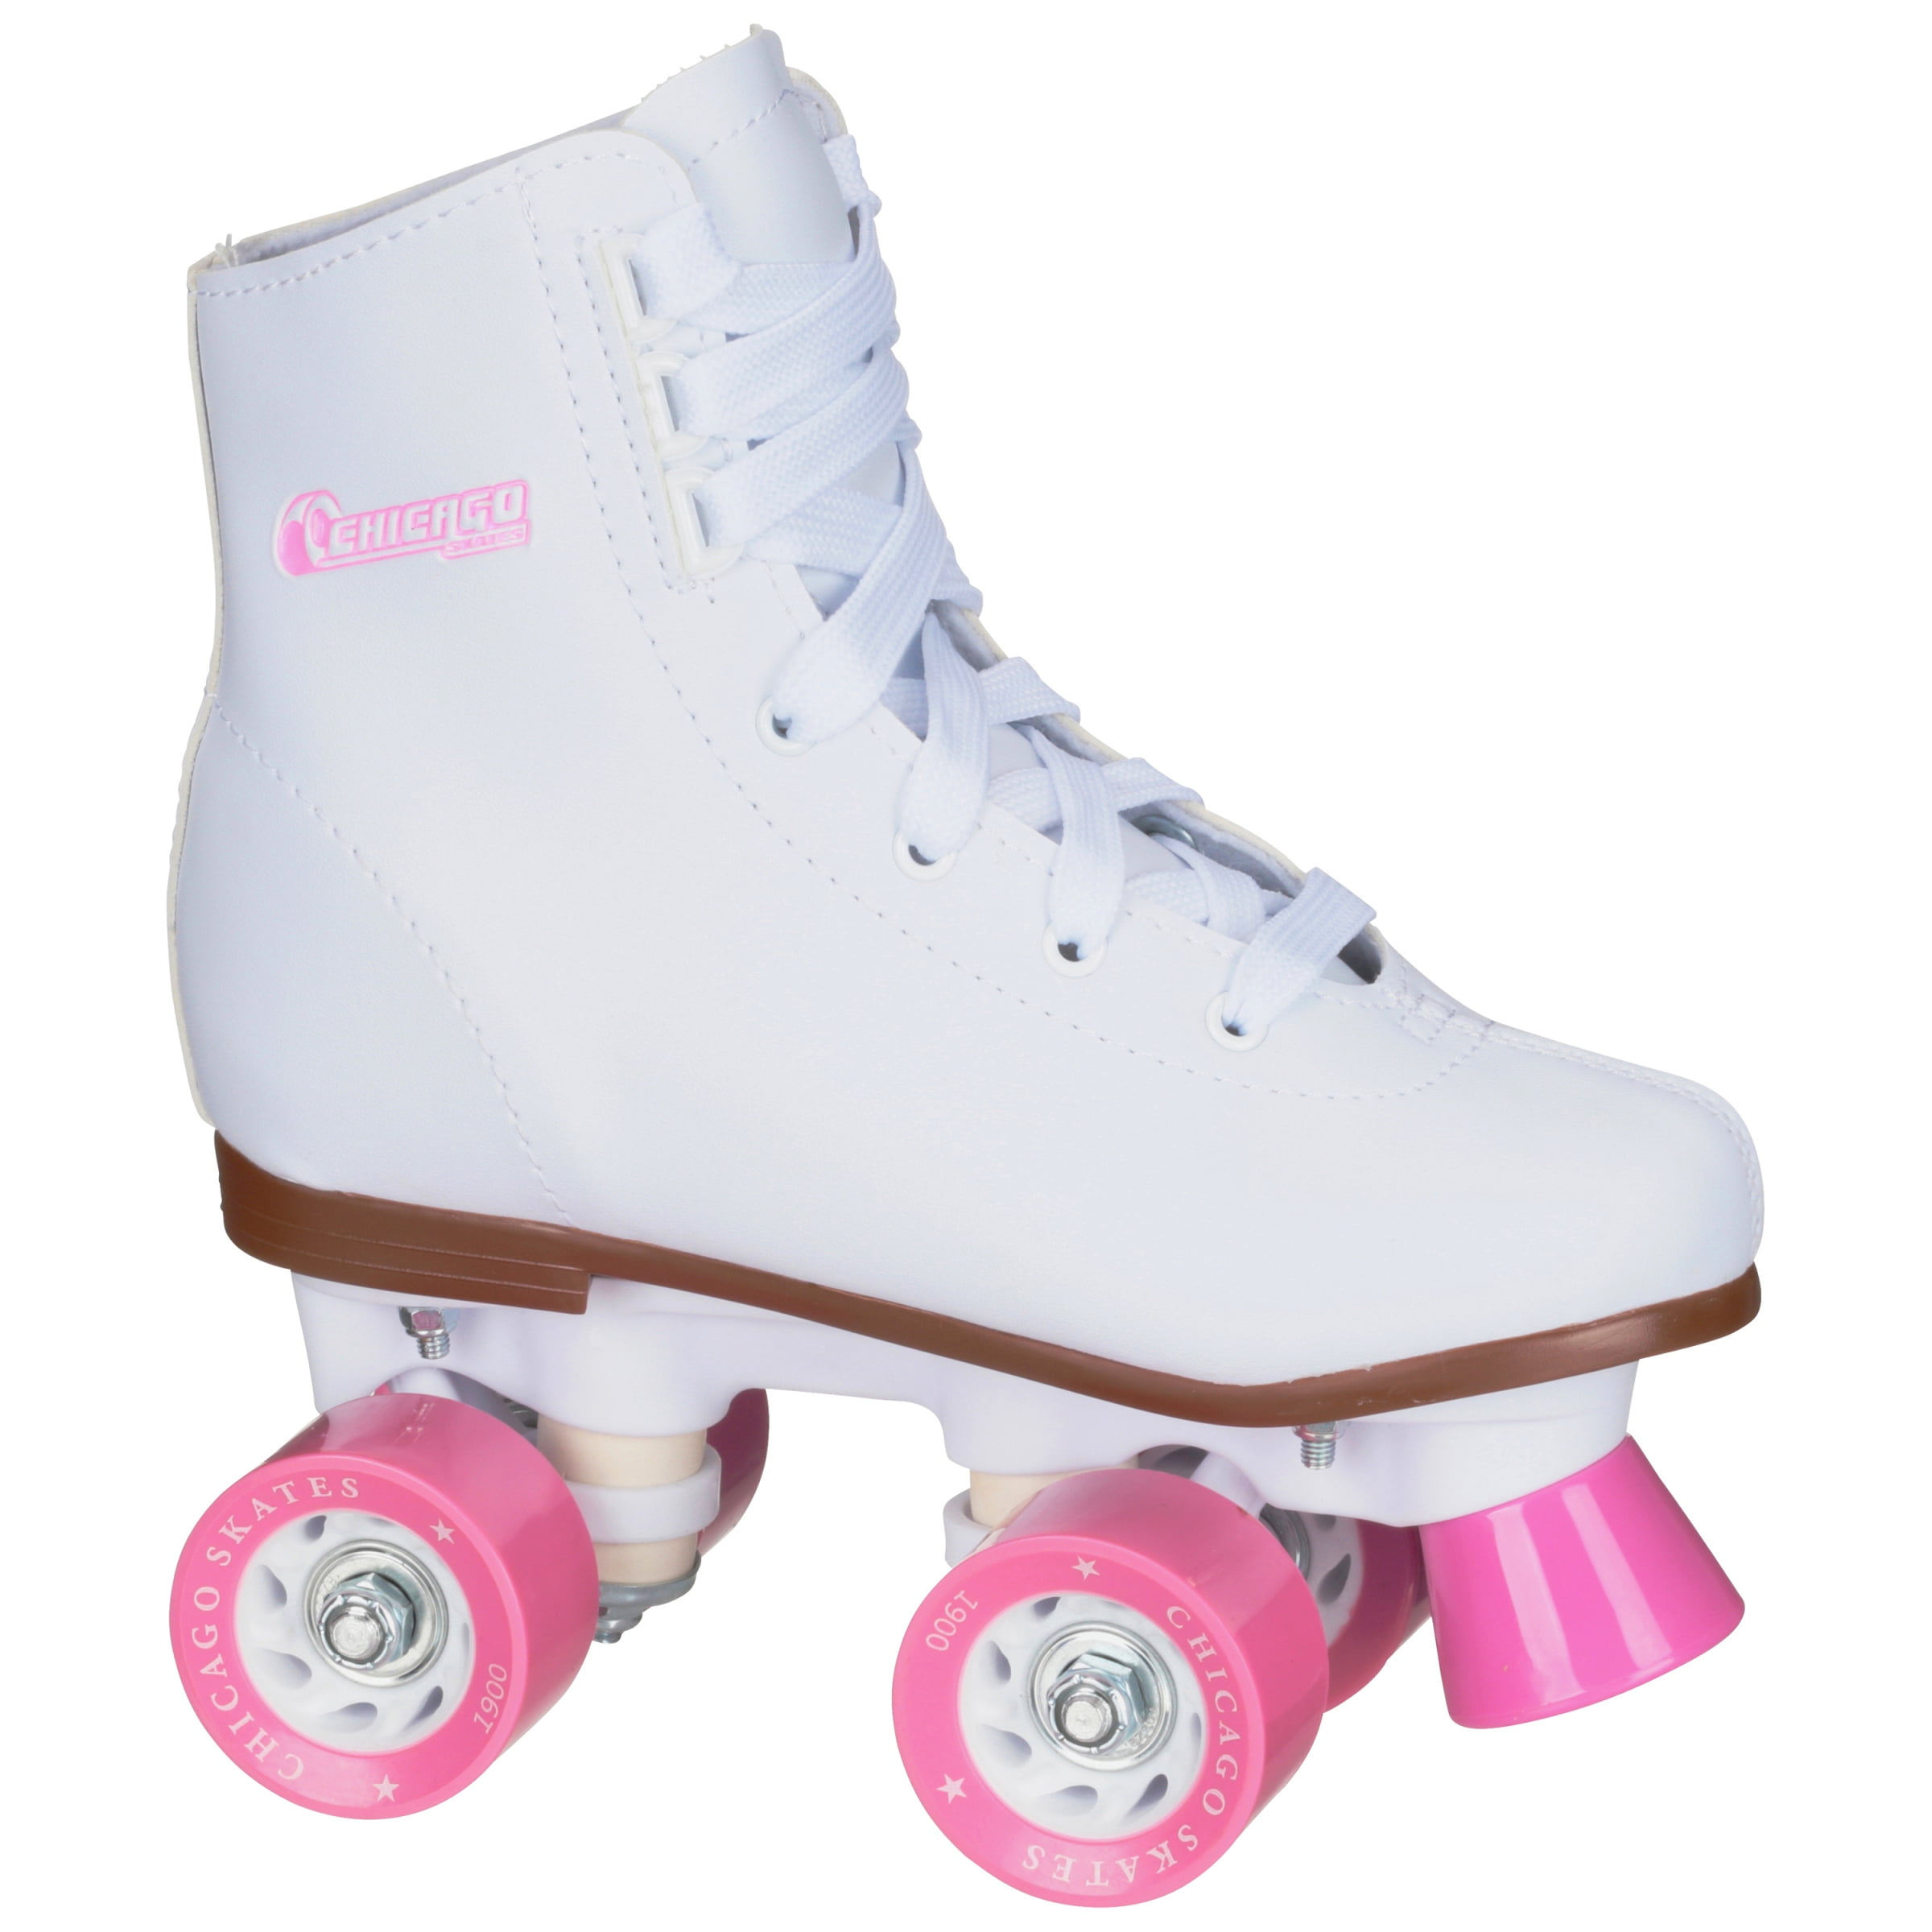 Premium White Quad Rink Skates CHICAGO Women's and Girl's Classic Roller Skates 